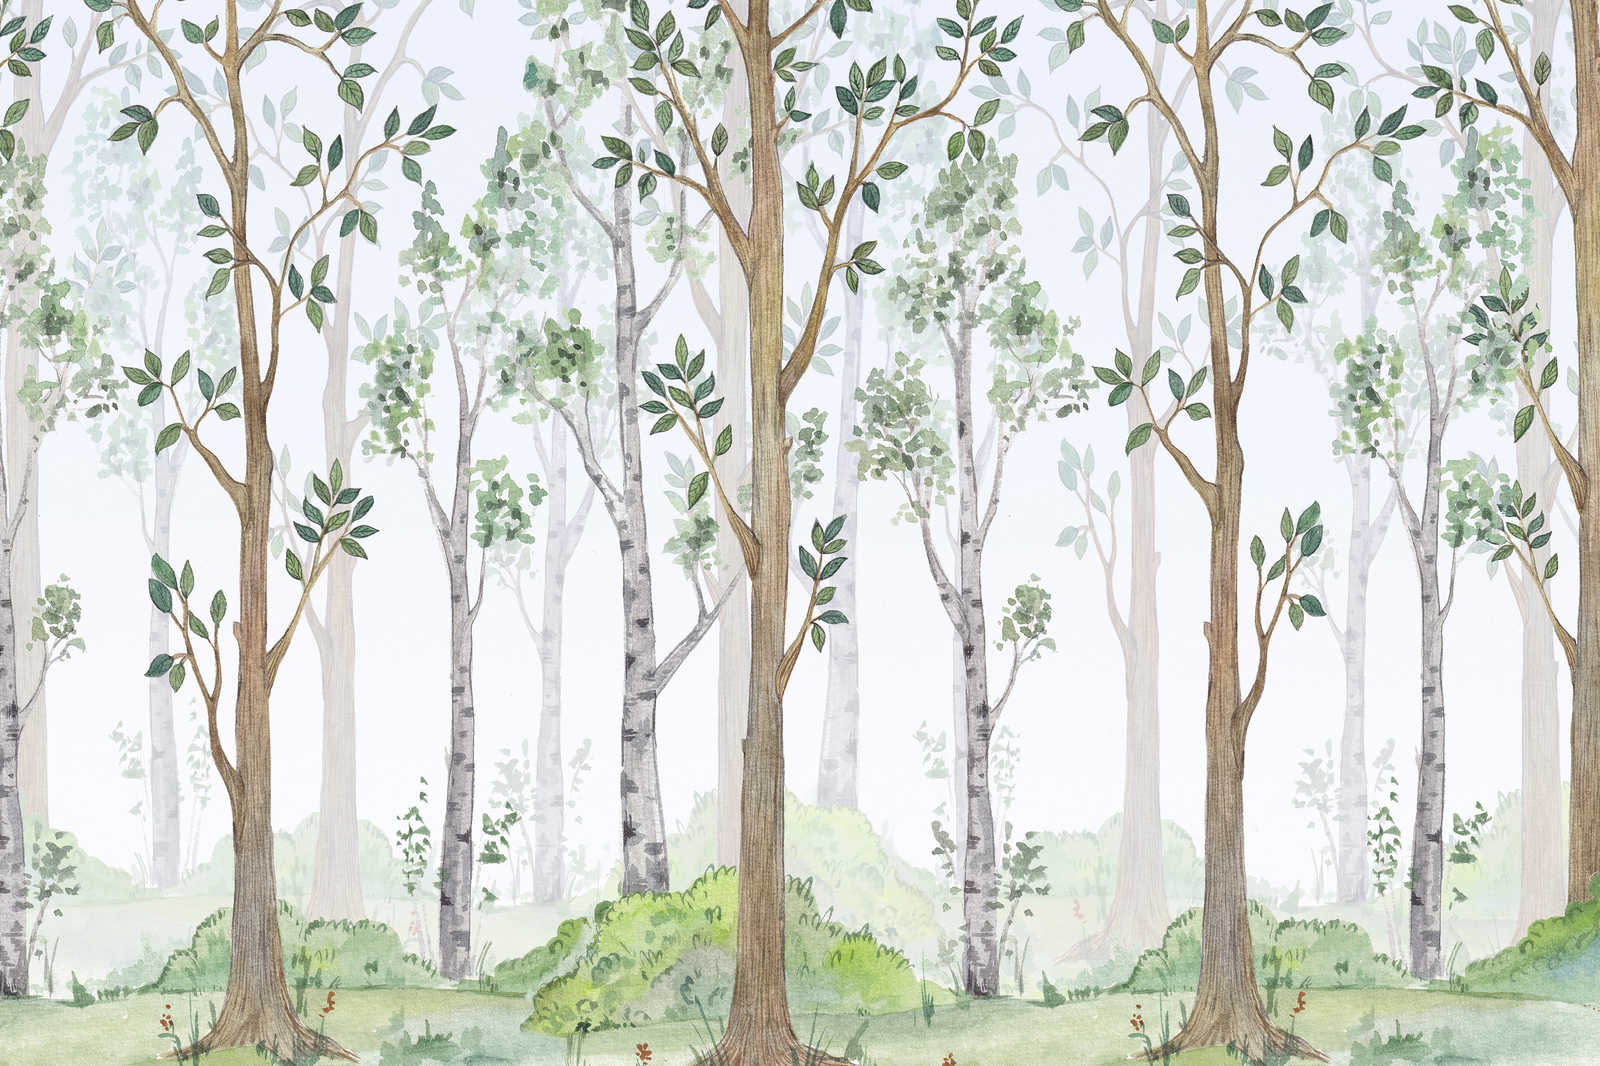             Toile avec forêt peinte pour chambre d'enfant - 0,90 m x 0,60 m
        